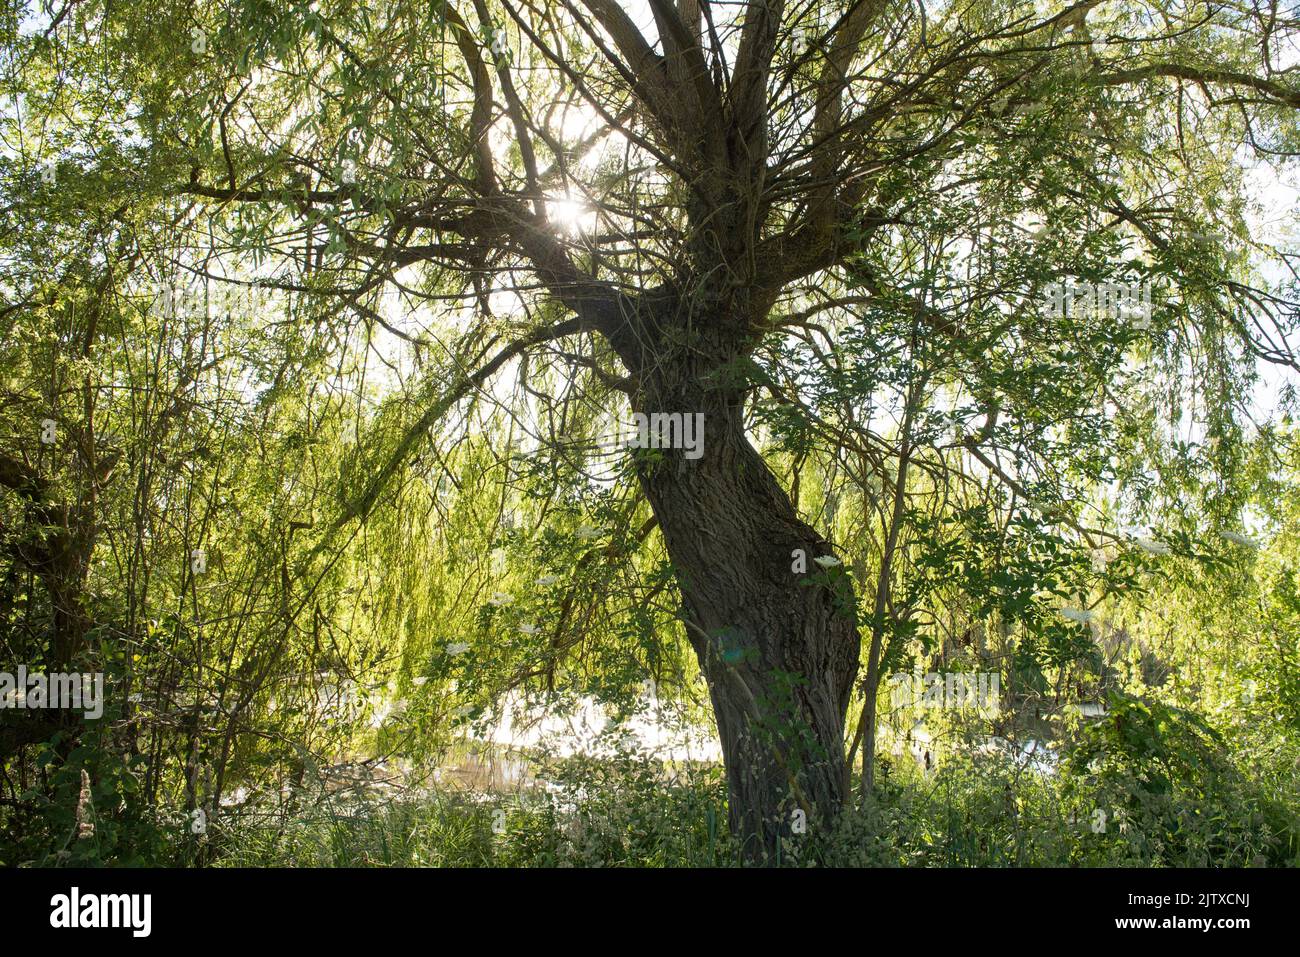 Babylon willow by the Plan d'eau de Mezieres-Ecluzelles near Dreux, Eure-et-Loir department, Centre-Val-de-Loire region, France, Europe. Stock Photo